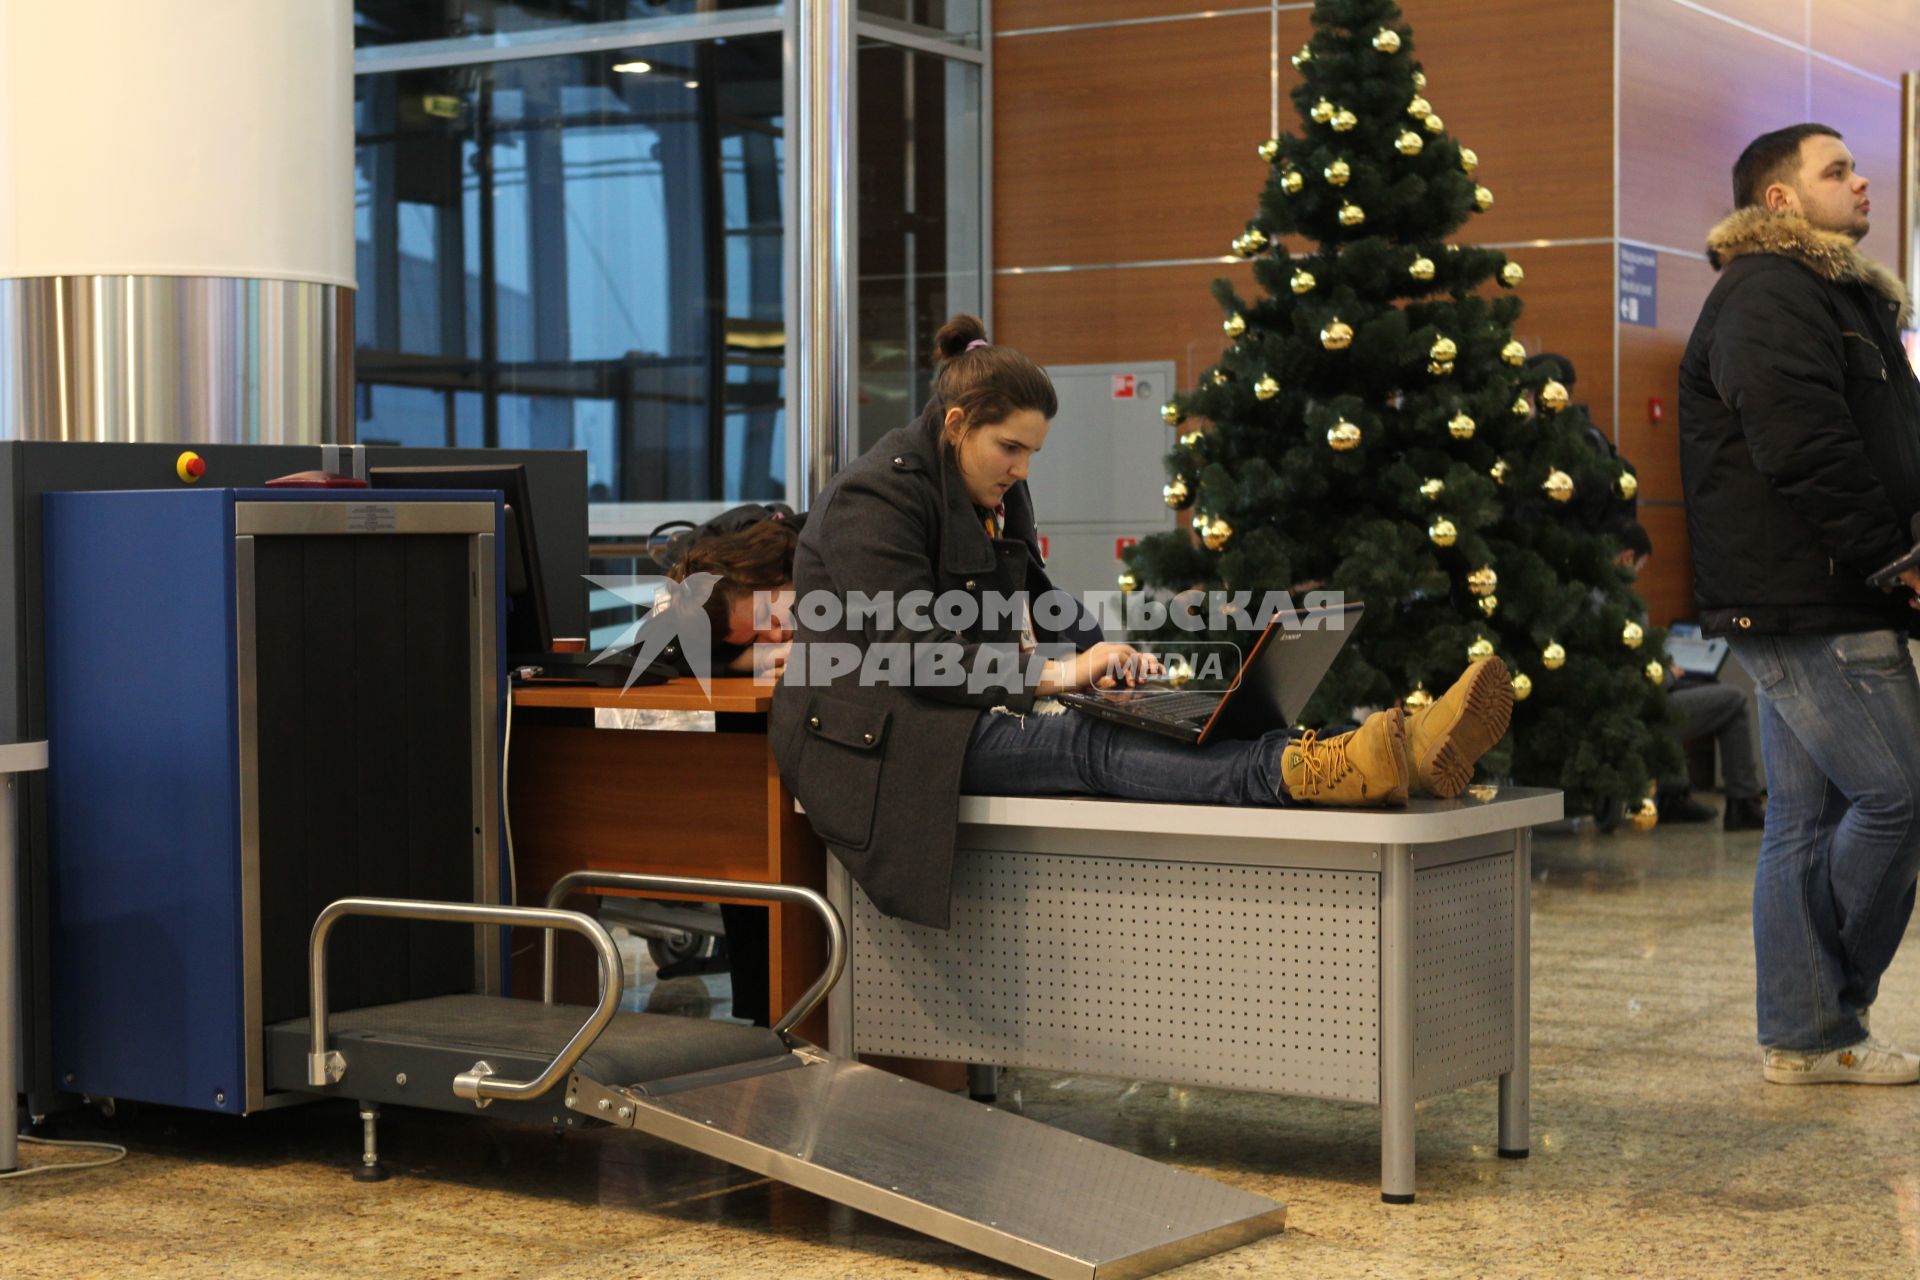 Транспортный коллапс в аэропорту  Шереметьево-2. На снимке: пассажирка сидит с ноутбуком на стойке у рентгеновского досмотра.